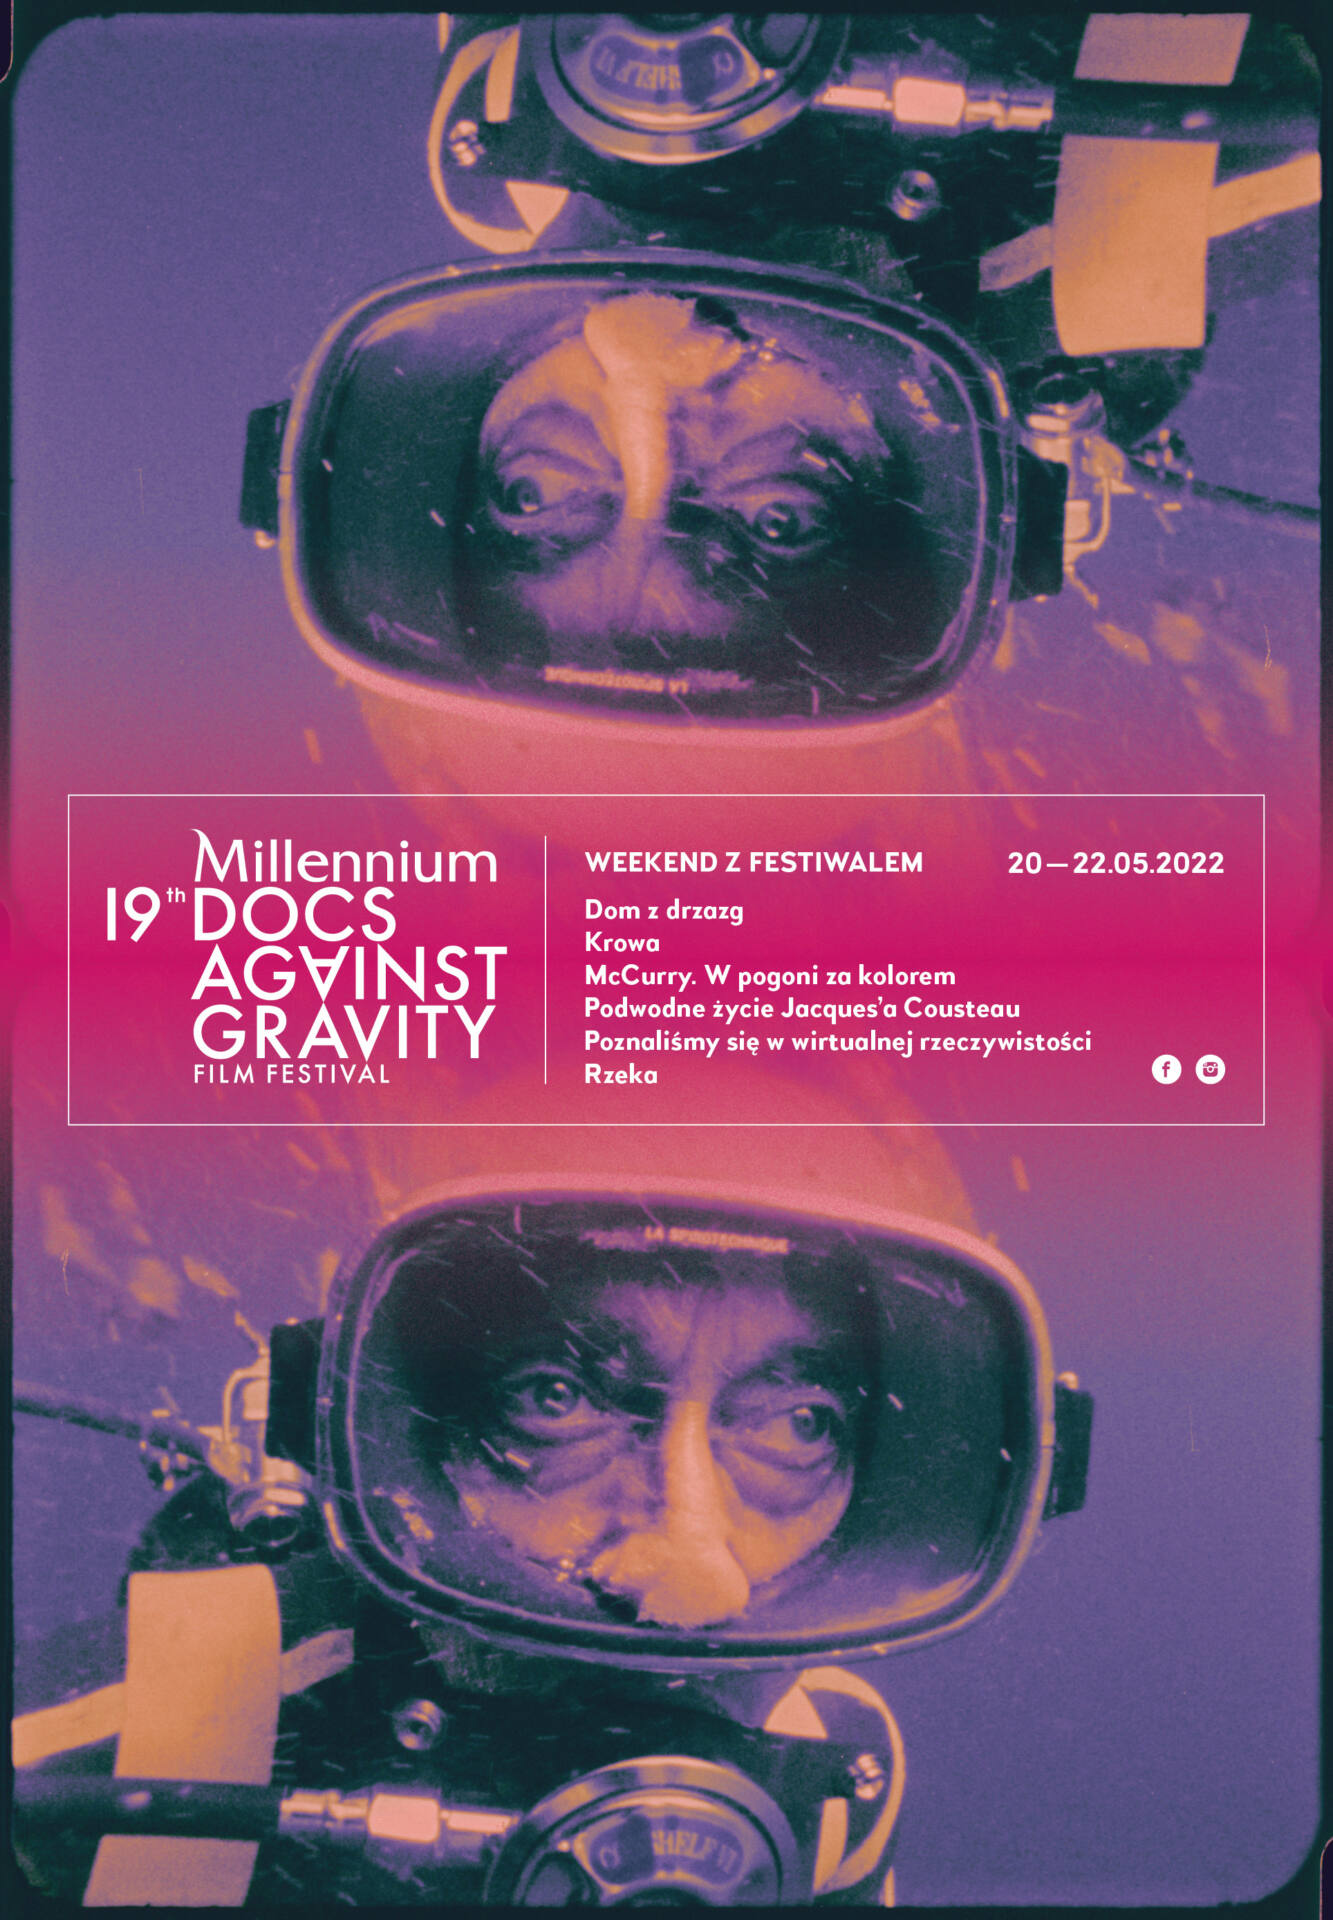 19mdag weekend z f plakat net Weekend w Zamościu z Festiwalem Millennium Docs Against Gravity